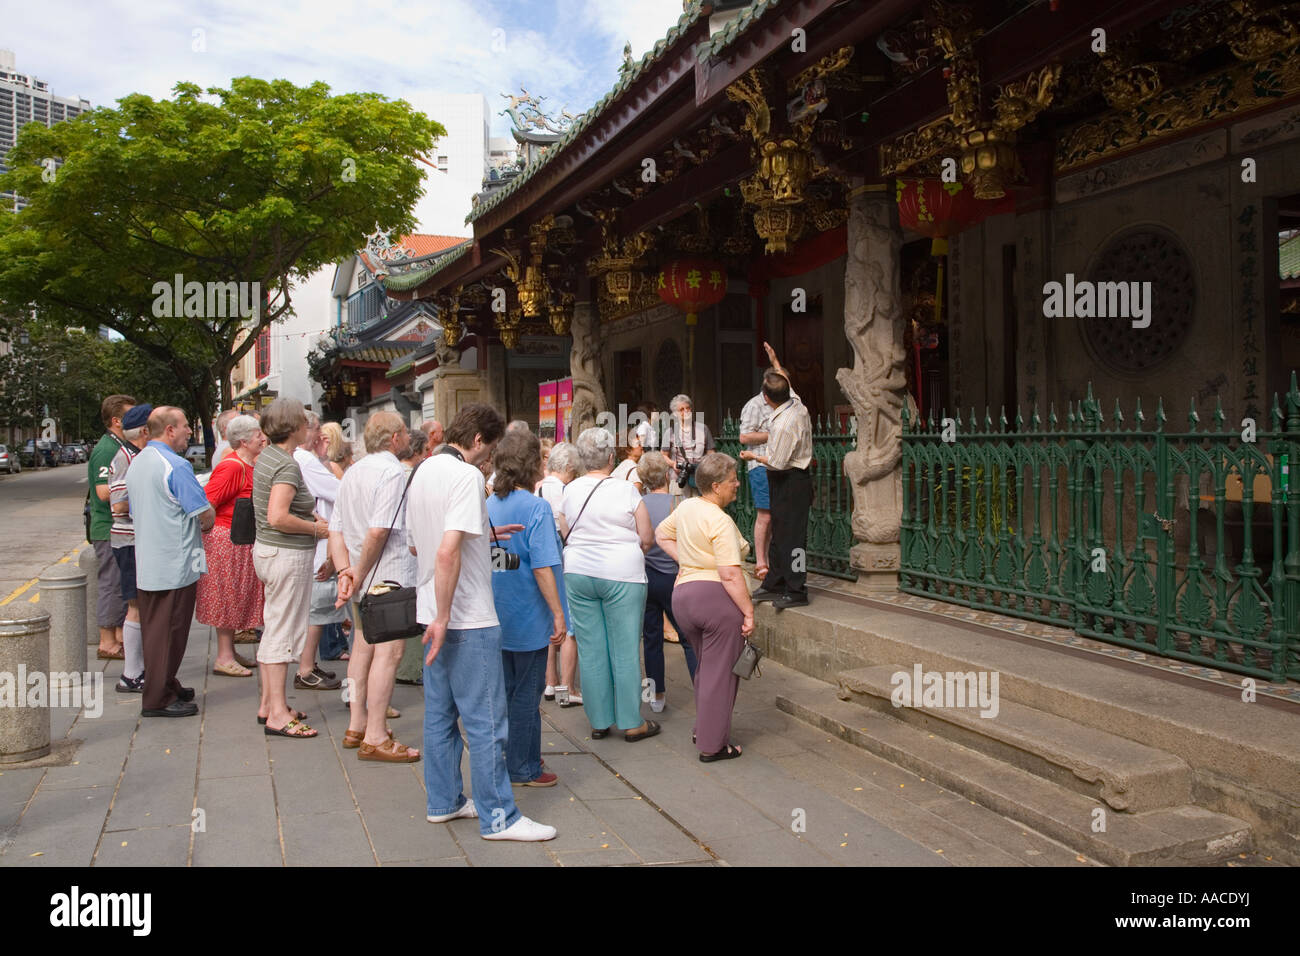 Groupe de touristes à l'extérieur de Temple Thian Hock Keng bonheur céleste dédié à Ma Po Cho Déesse Outram Chinatown Singapore Banque D'Images